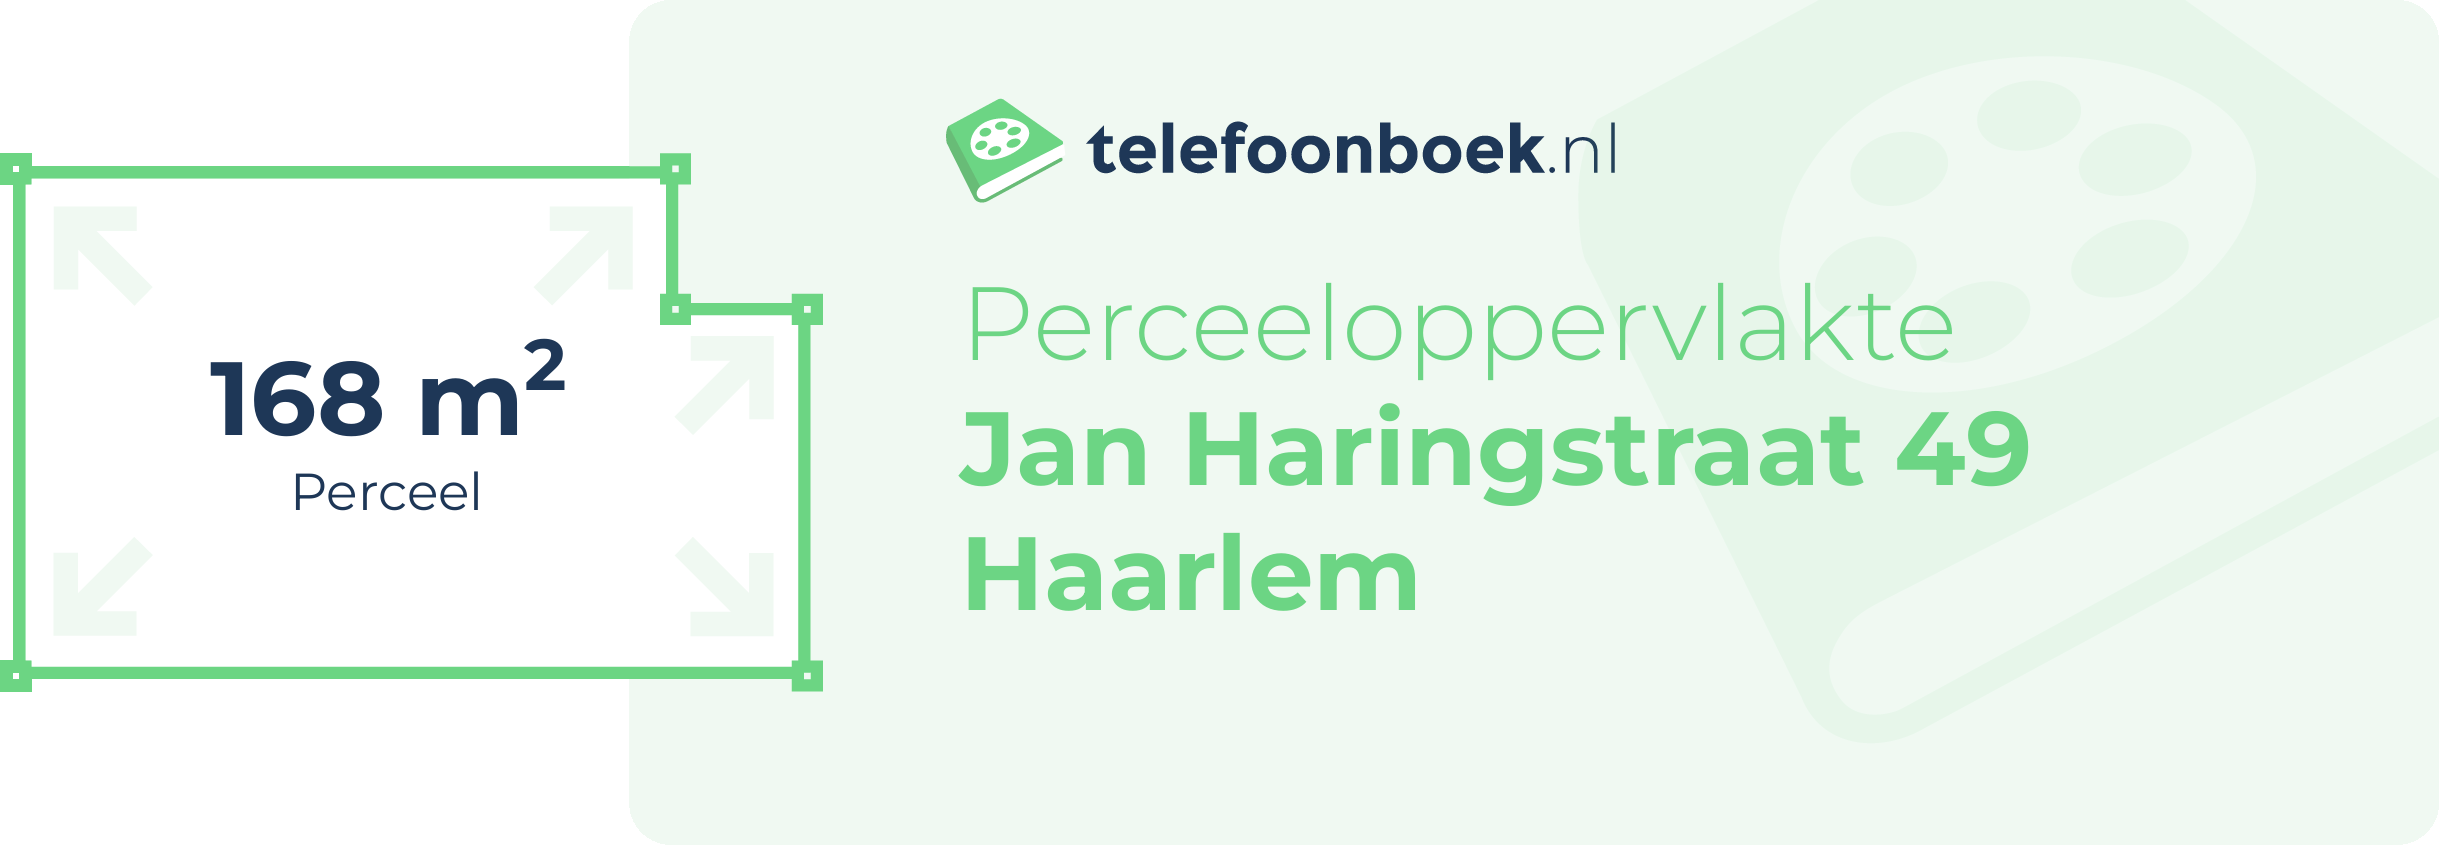 Perceeloppervlakte Jan Haringstraat 49 Haarlem